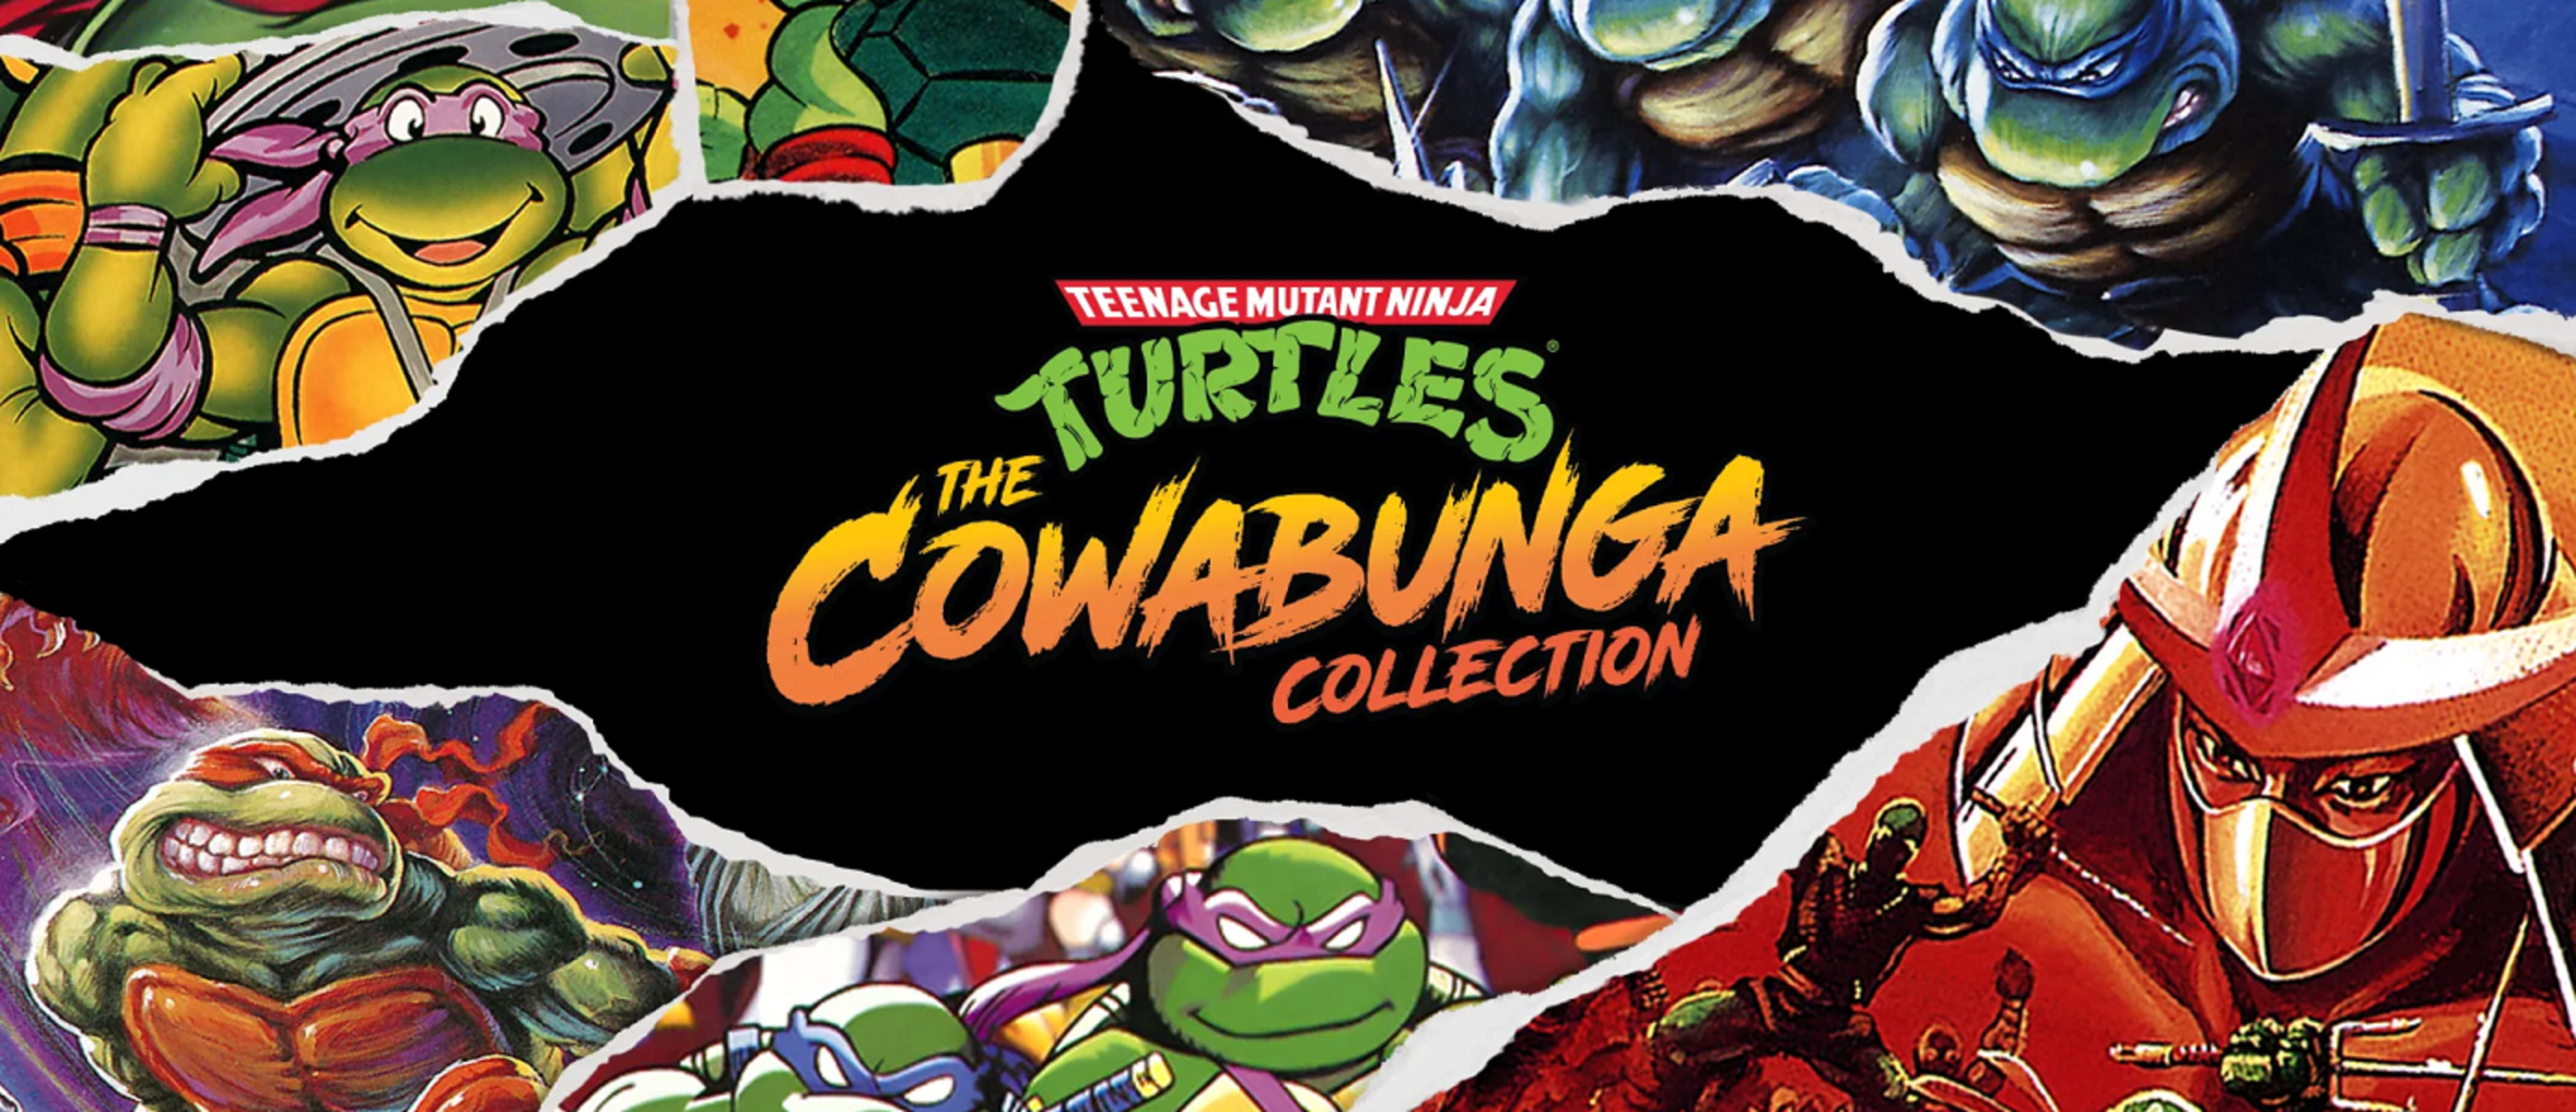 Turtles cowabunga. Cowabunga Черепашки ниндзя. Черепашки ниндзя сега. Черепашки ниндзя 2022. Teenage Mutant Ninja Turtles: the Cowabunga collection ключ.